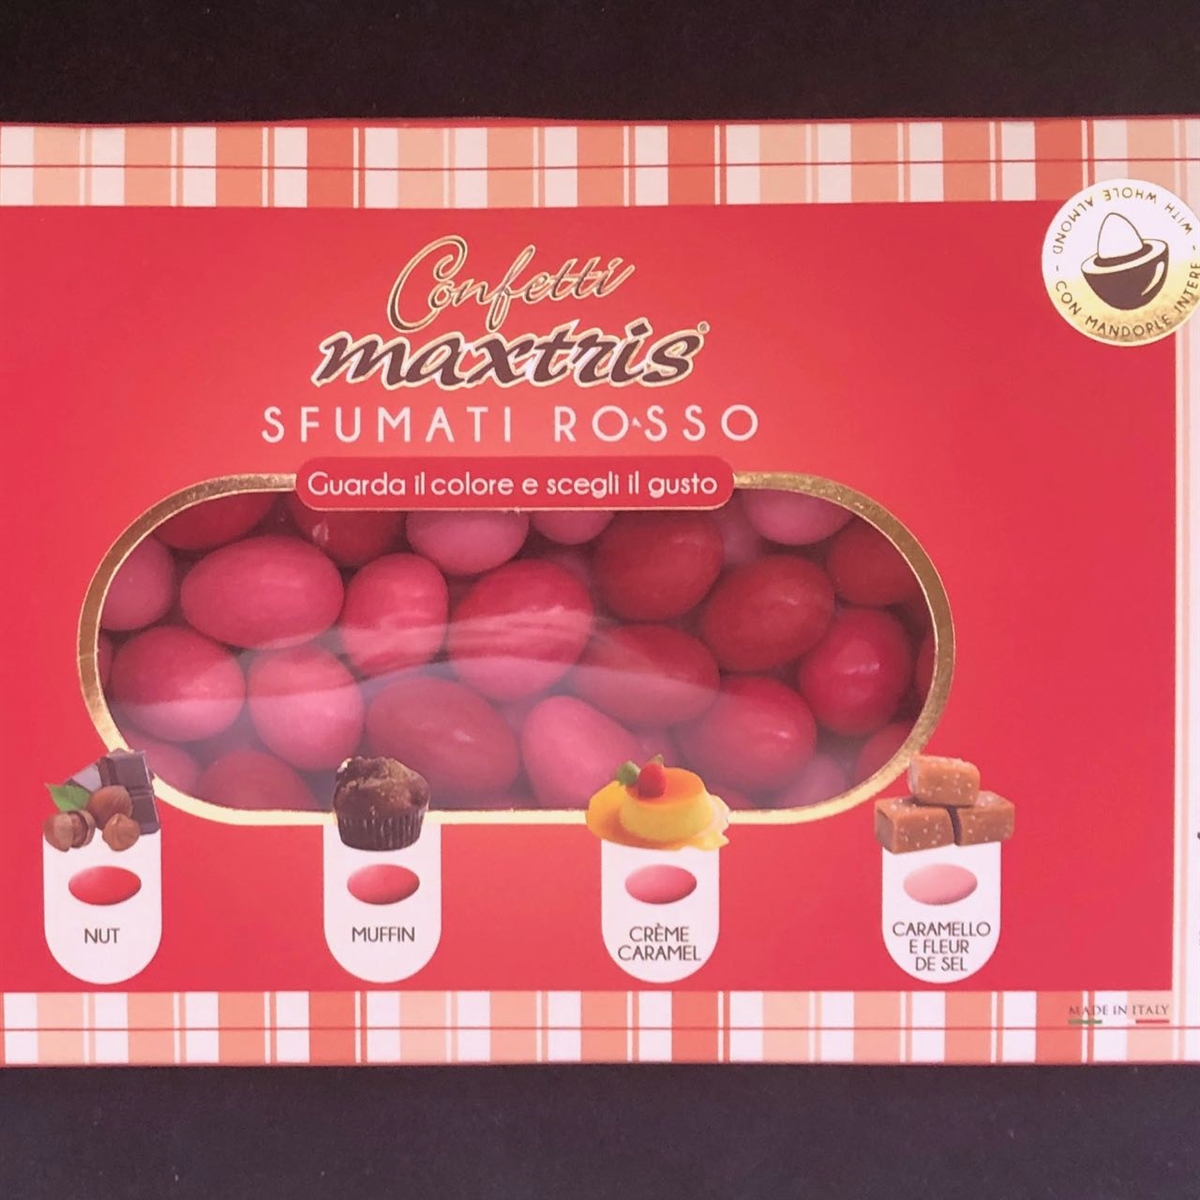 Sfumati Rosso Mixed Italian Almond Confetti Candy by Confetti Maxtris